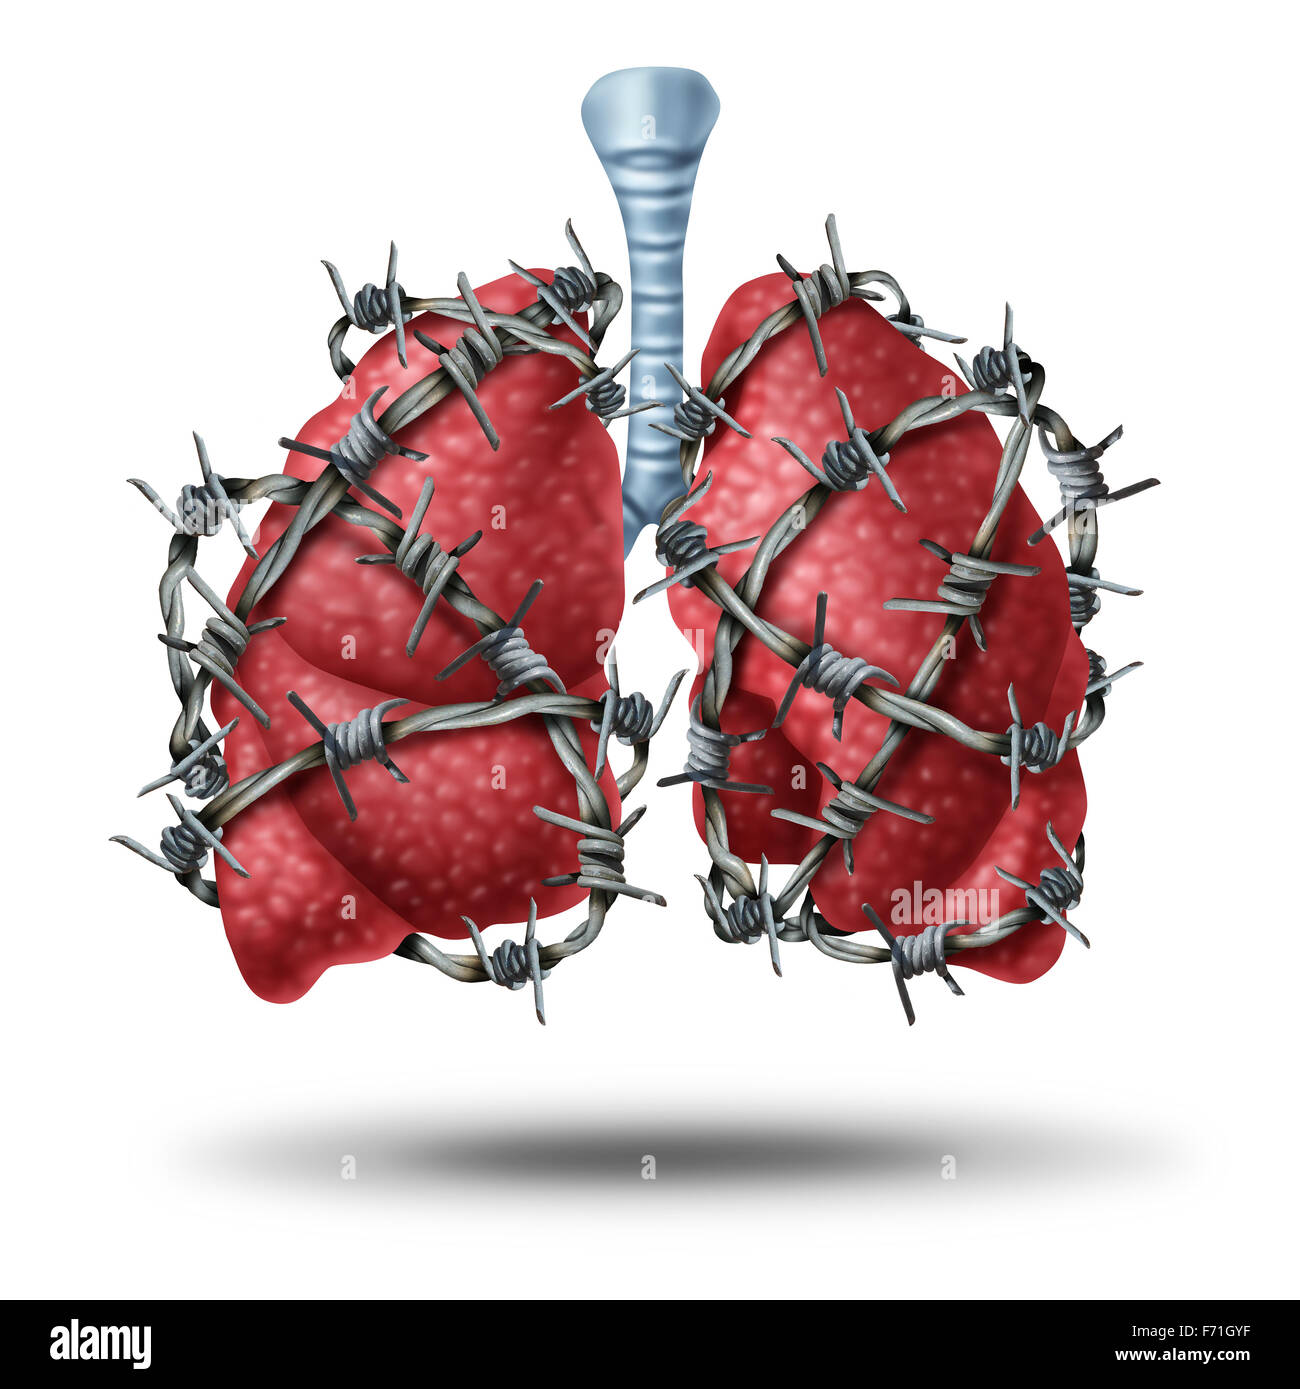 Douleur pulmonaire concept médical comme une paire de poumons humains enveloppés d'organes dangereux avec des barbelés ou barb wire comme un symbole de la santé de problèmes cardiovasculaires que la fibrose kystique ou la douleur de métaphore. Banque D'Images